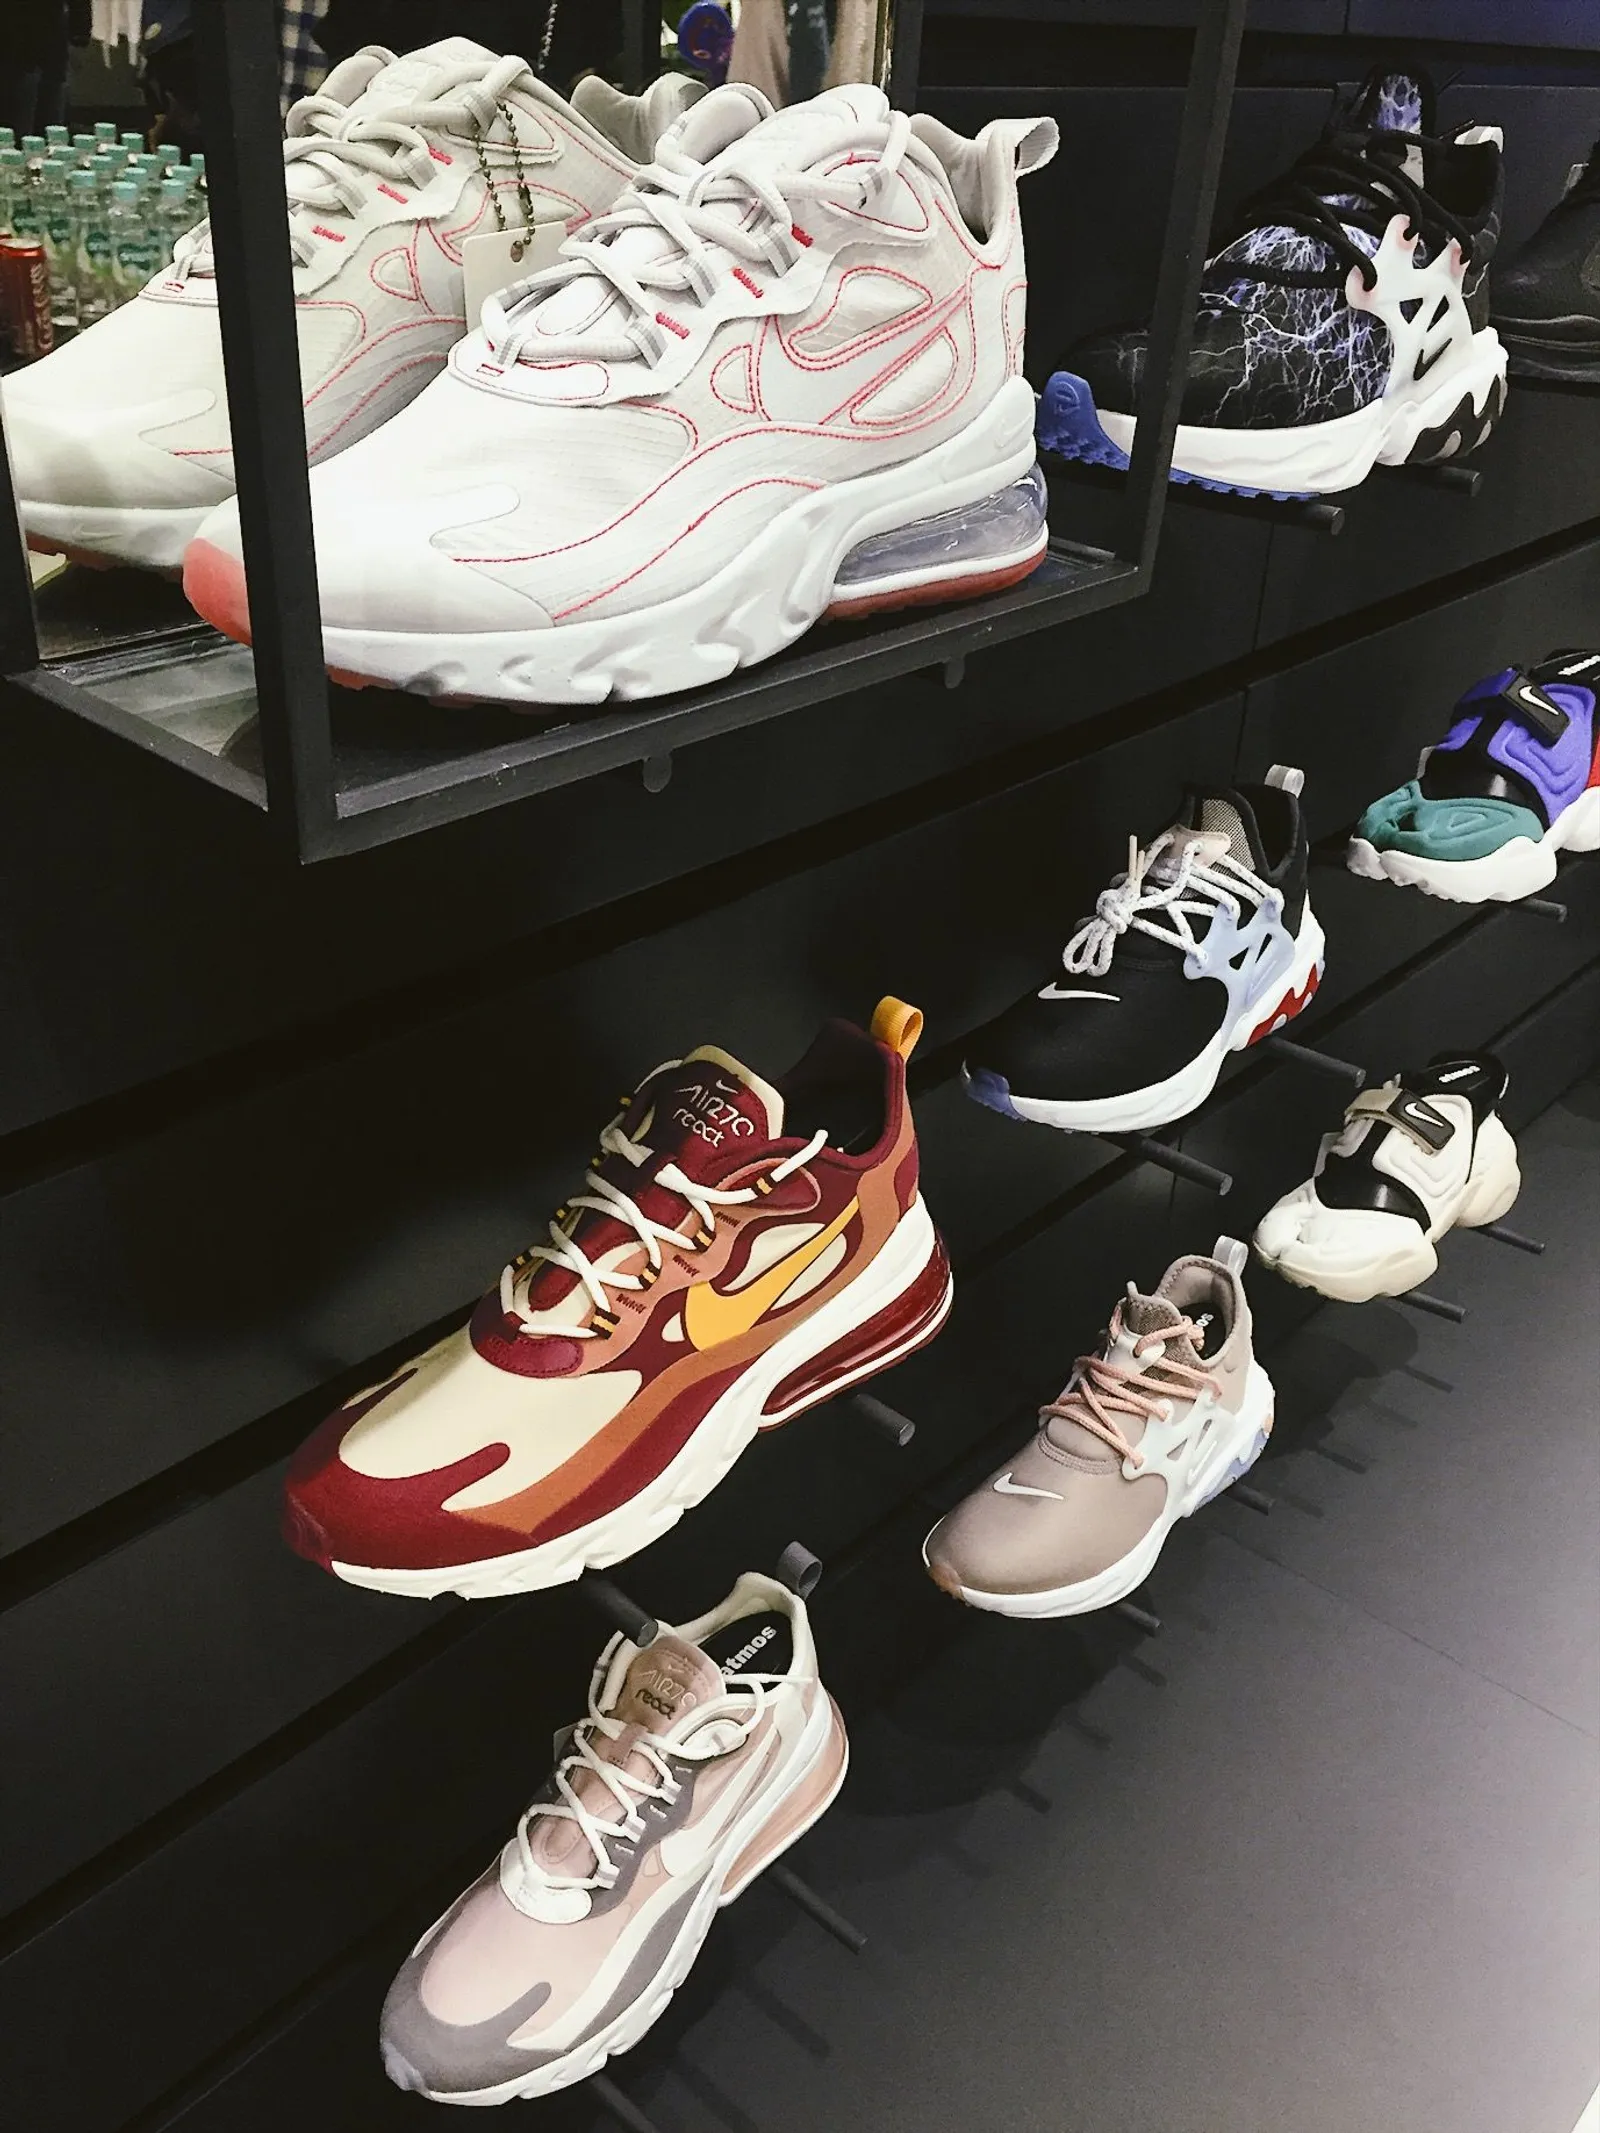 Ini Koleksi Lengkap Rare Sneakers Atmos yang Ada di Plaza Indonesia!